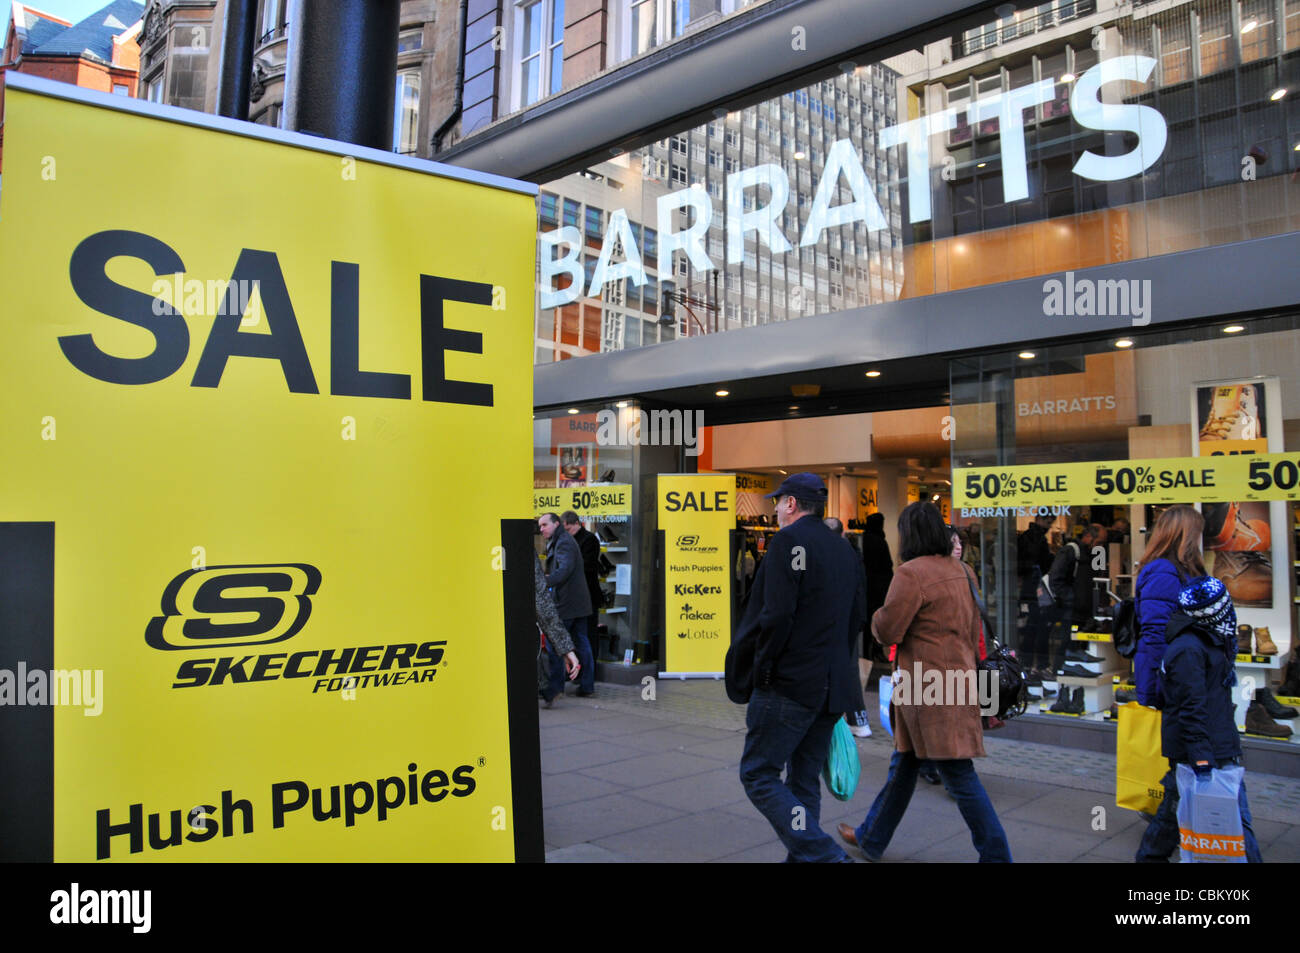 Barratts magasin de chaussures Oxford Street Londres fermeture vente ventes promotions de Noël Banque D'Images